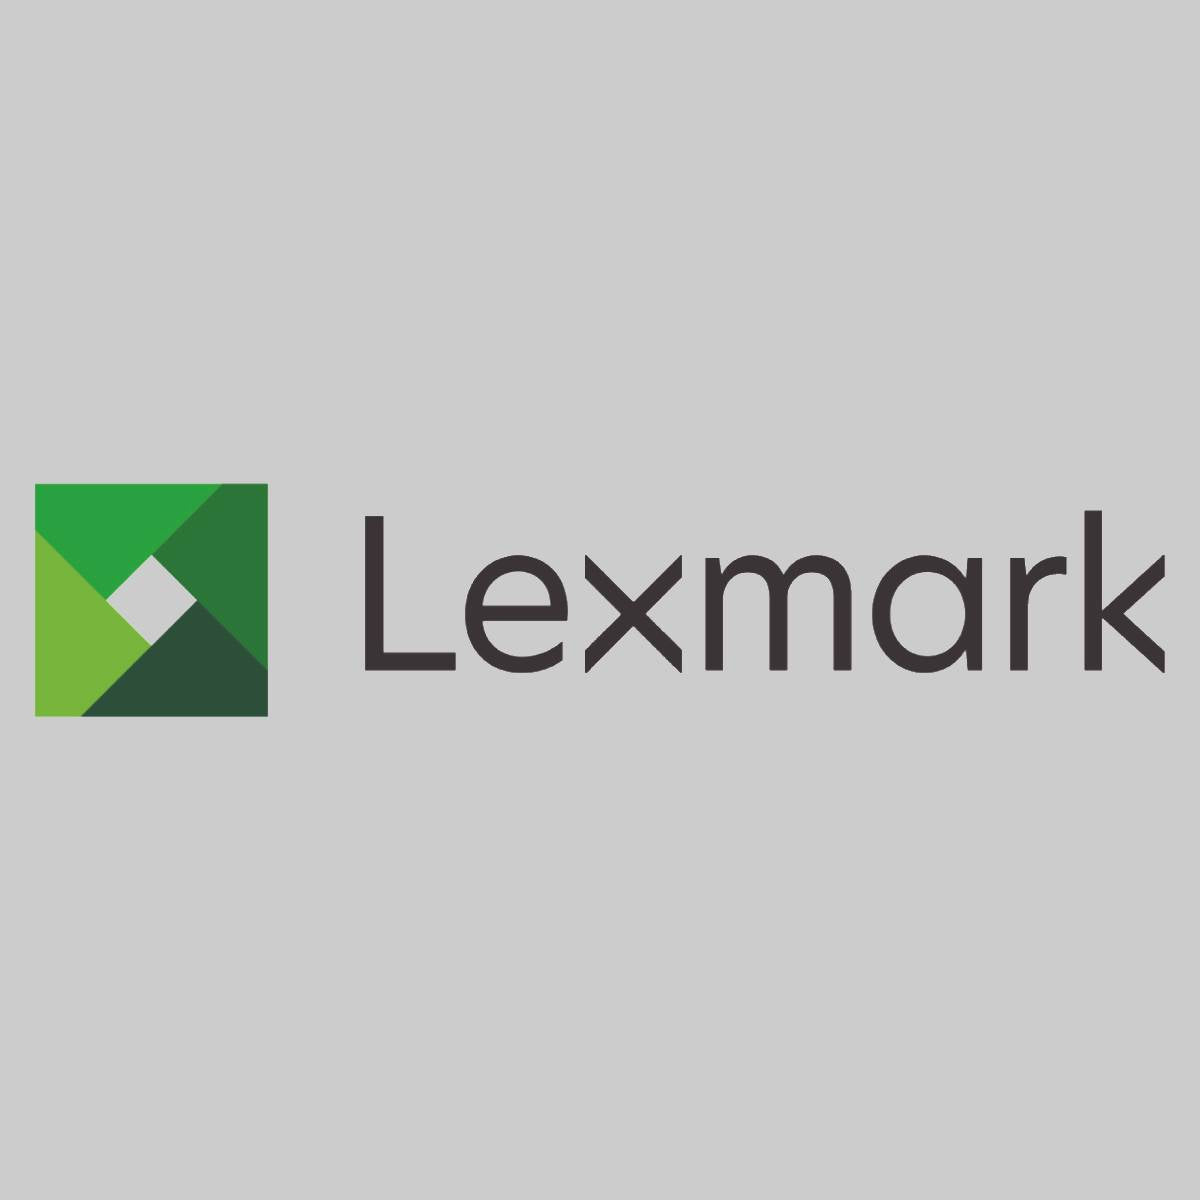 "Original Lexmark toner black 64G0H00 for MX 910 MX 911 MX 912 NEW OVP